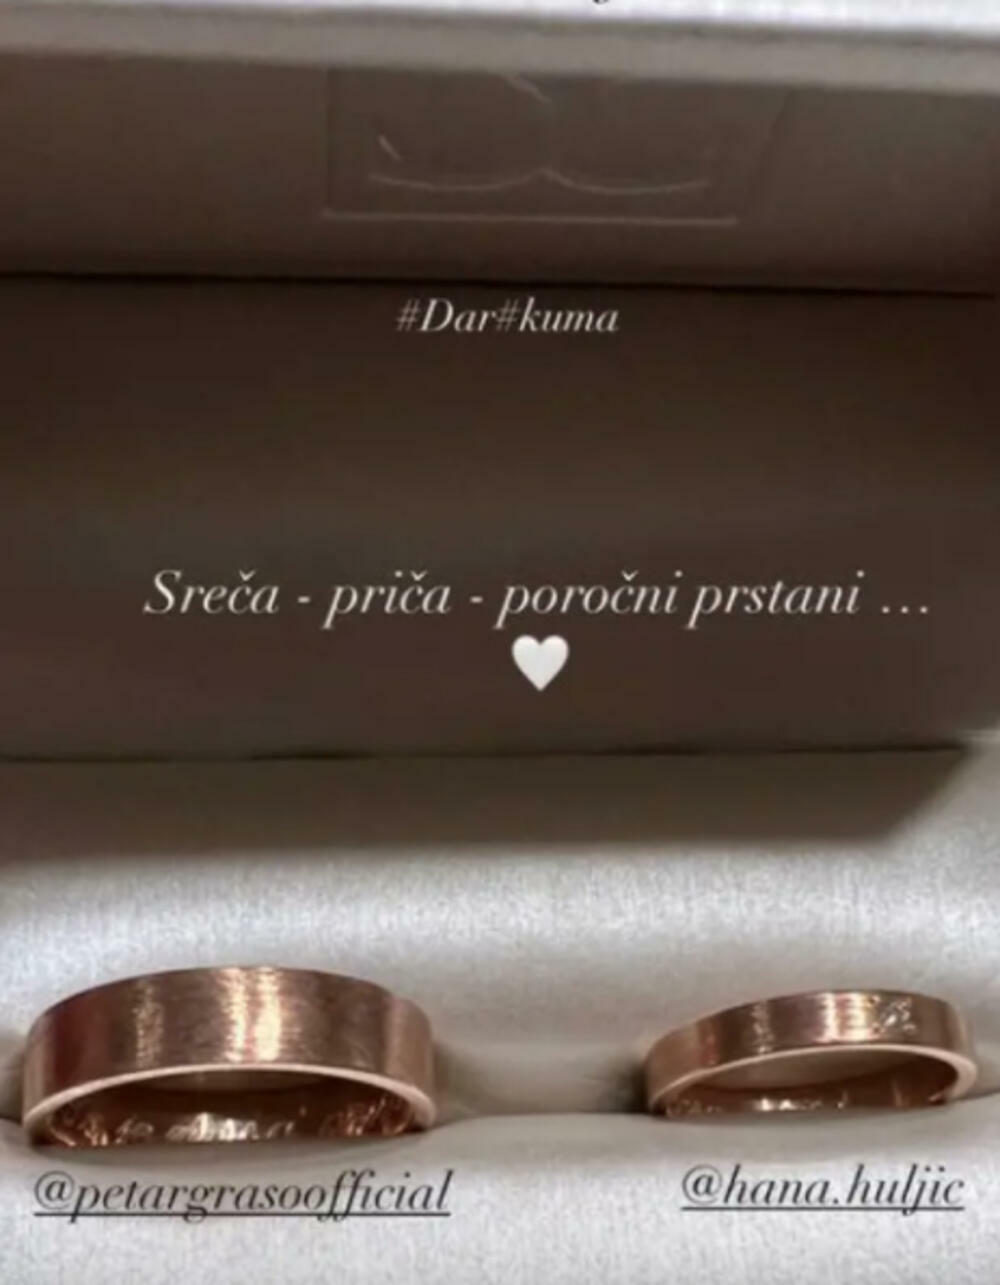 <p>Danima nakon "venčanja godine" cure novi detalji o Hani Huljić i Petru Grašu, a sada je poznato i gde će par živeti, kao i da su već smislili ime za dete koje očekuju</p>